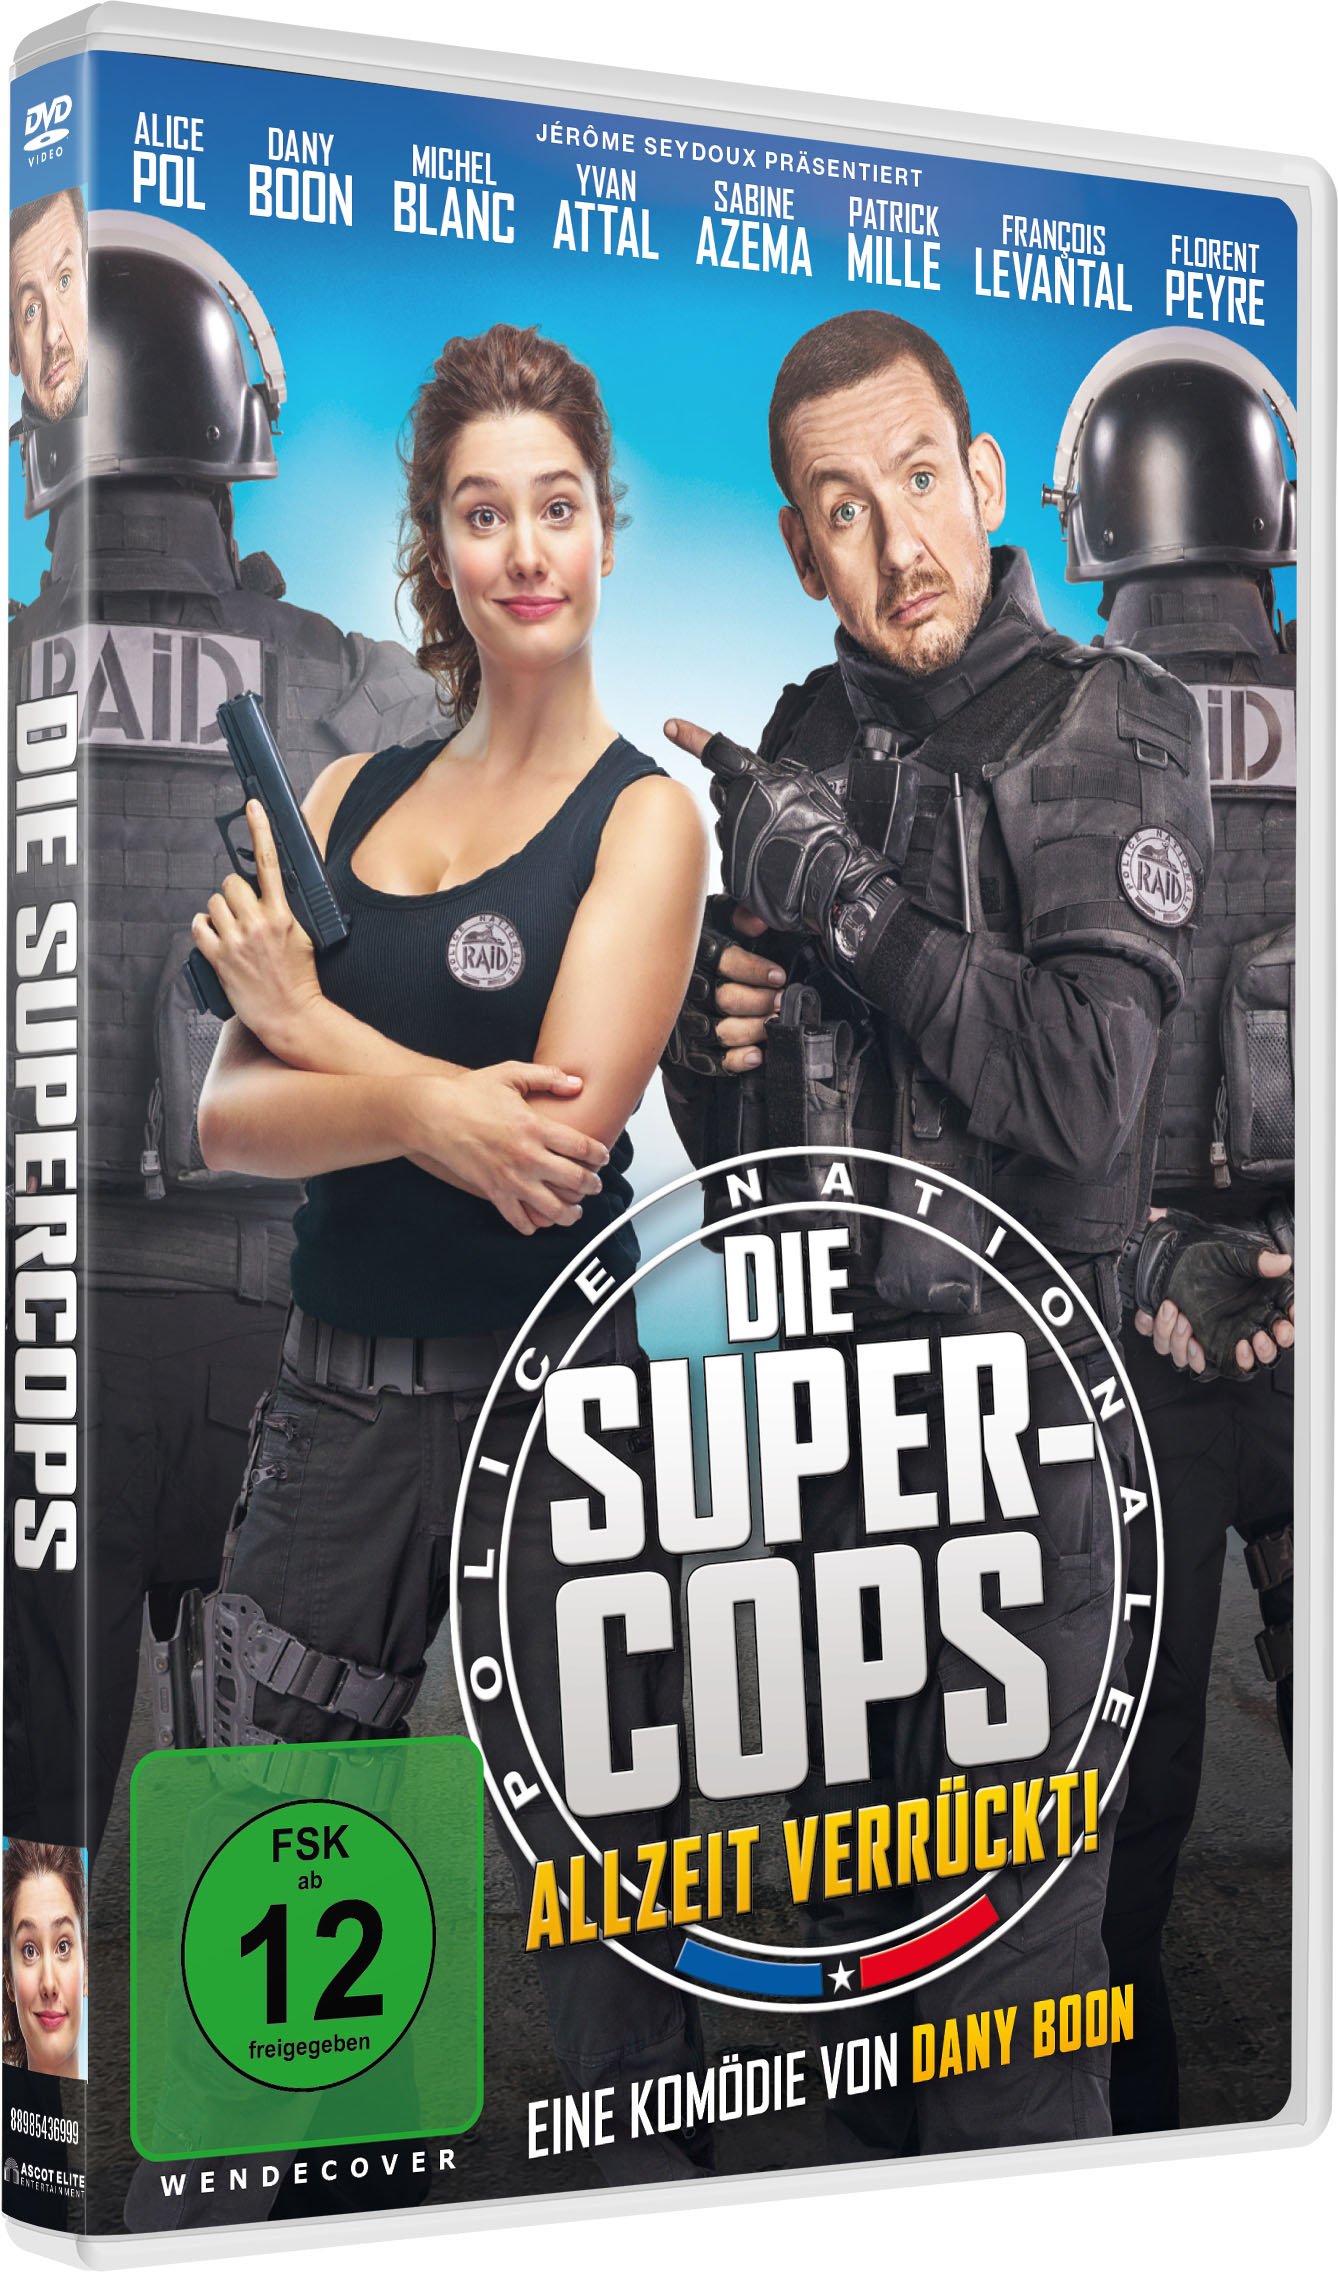 Die Super-Cops - Allzeit Verrückt! DVD